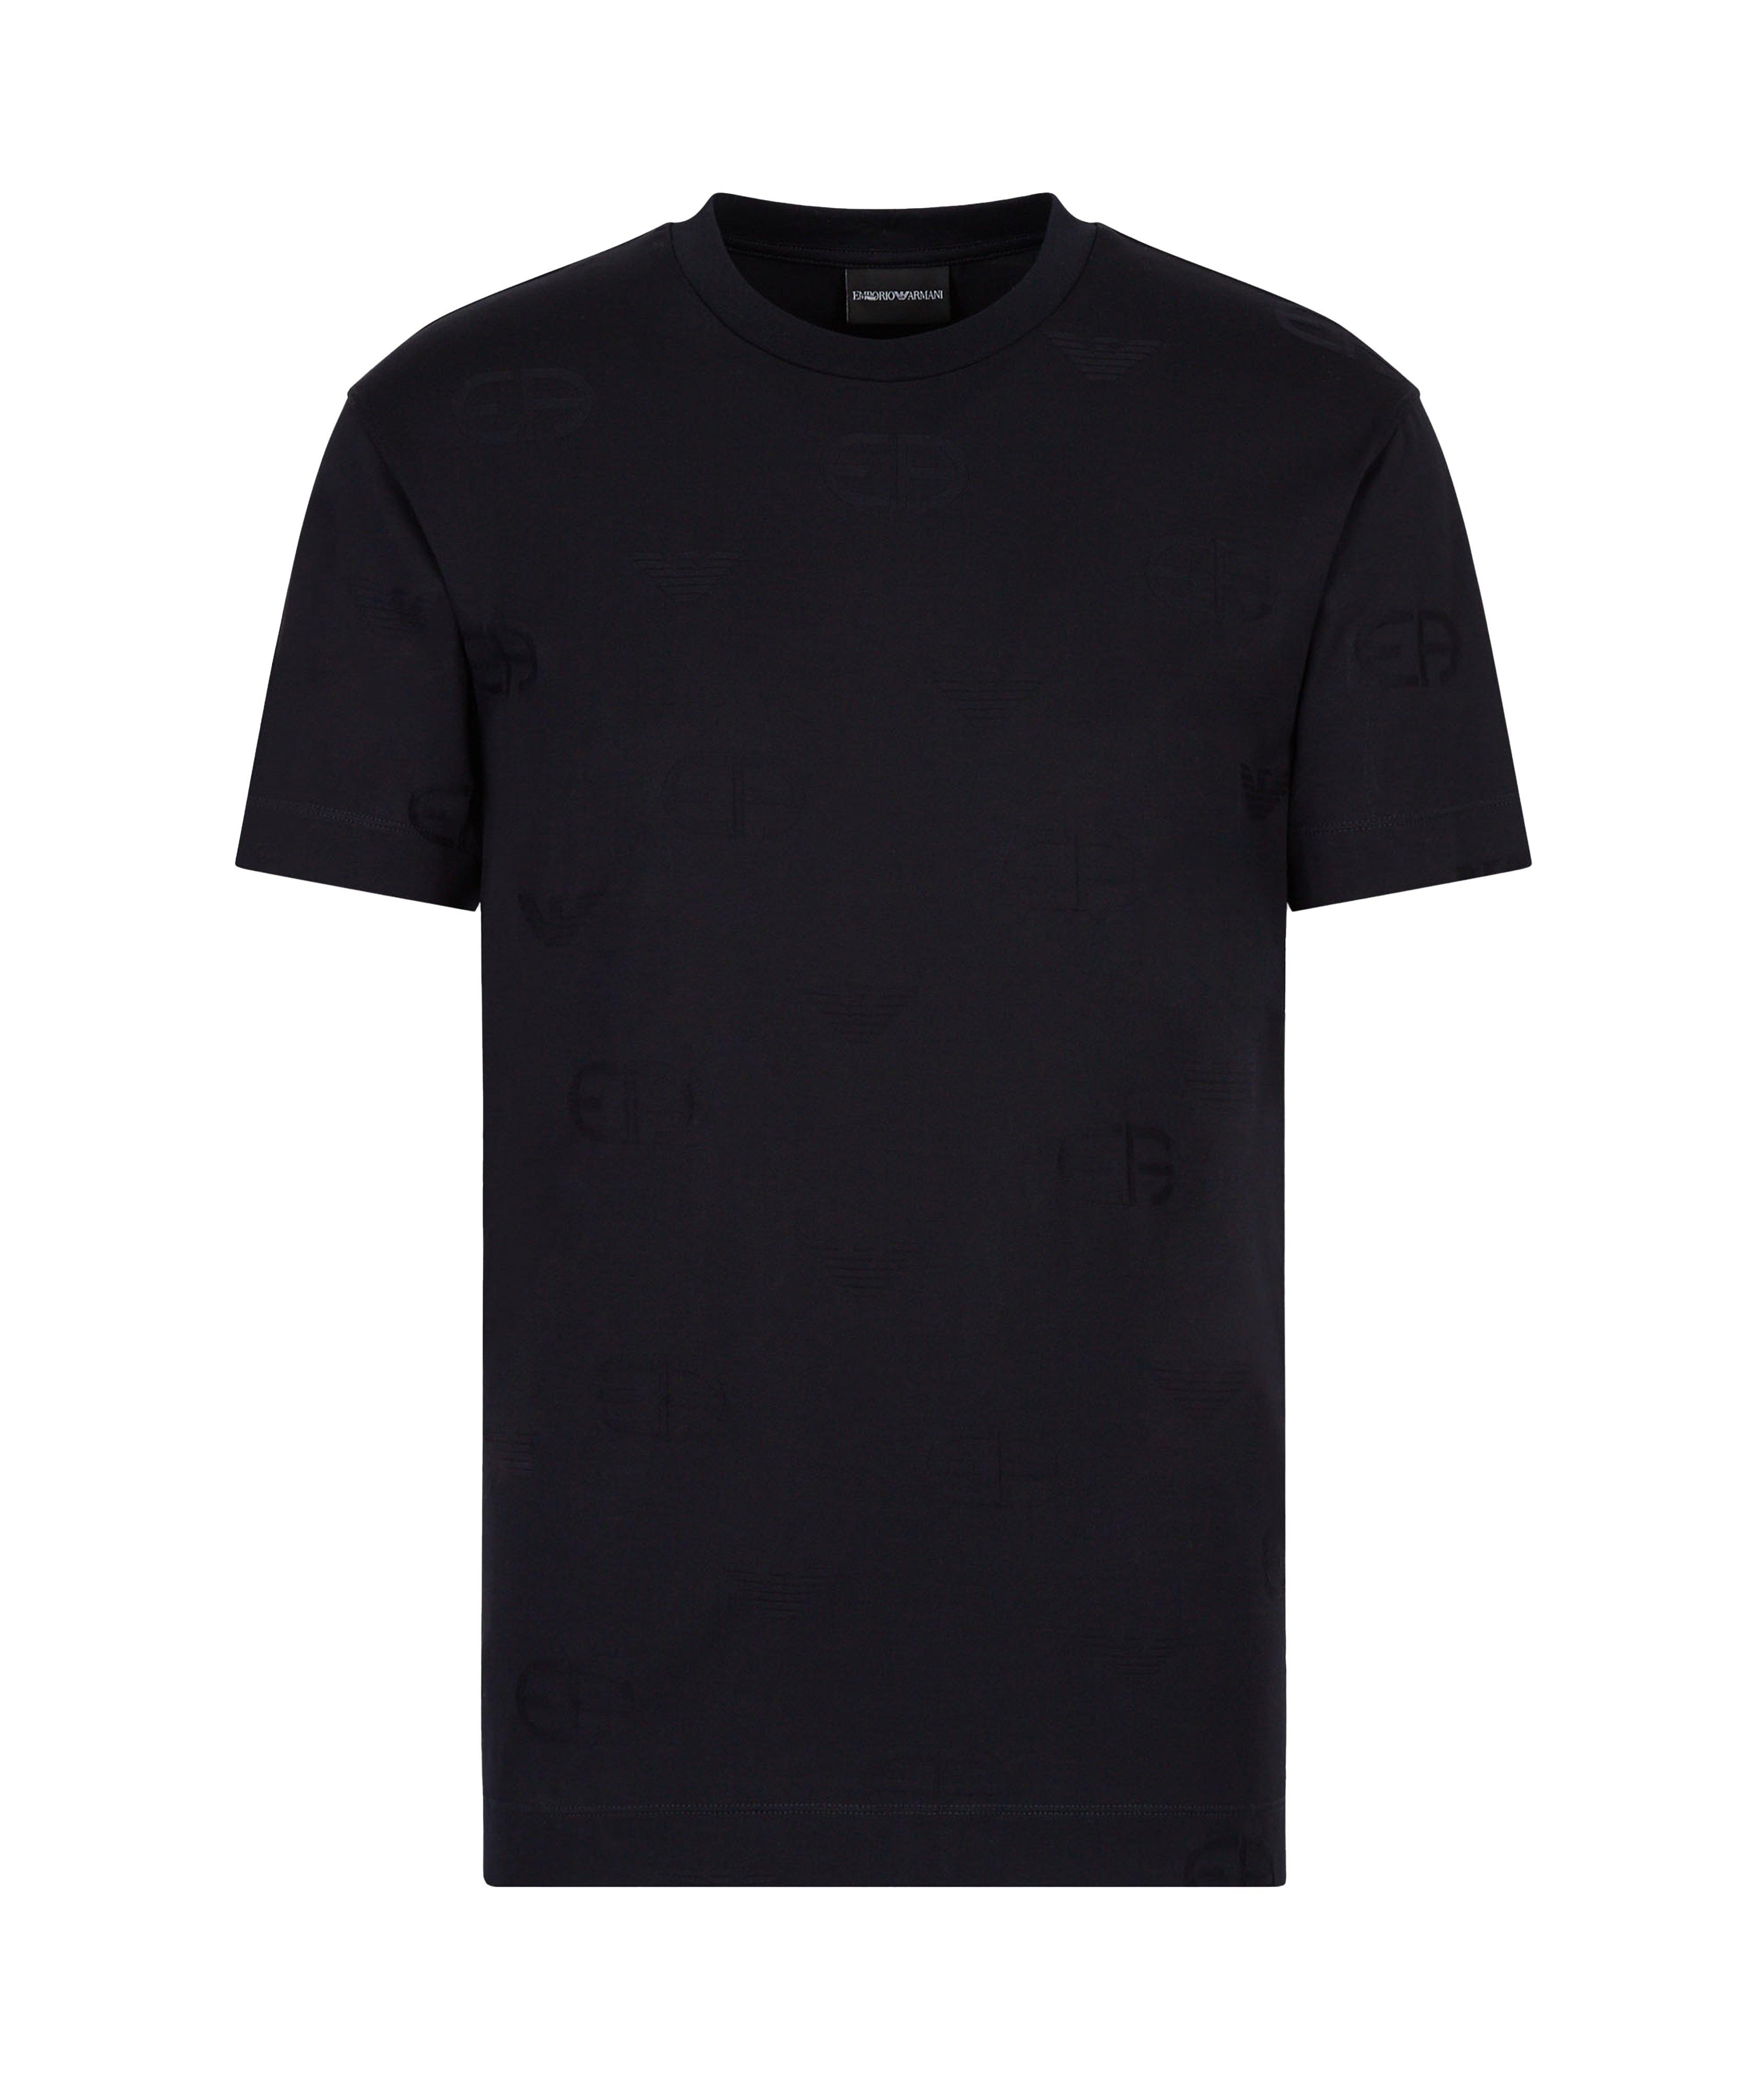 Jersey T-Shirt Embossed Intarsia-Knit Logo image 0